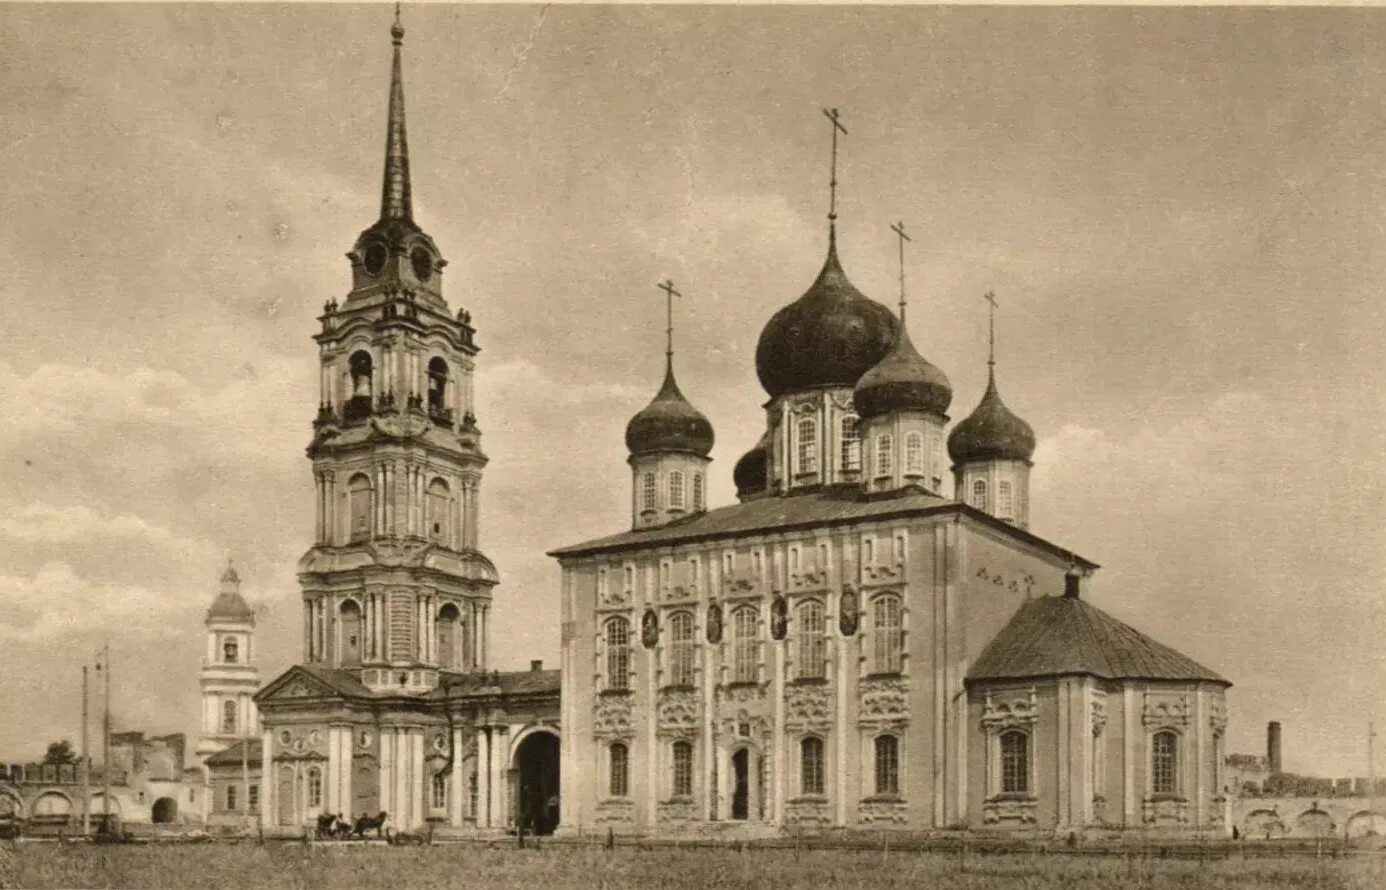 Тула в 18 веке. Колокольня Успенского собора Тула.